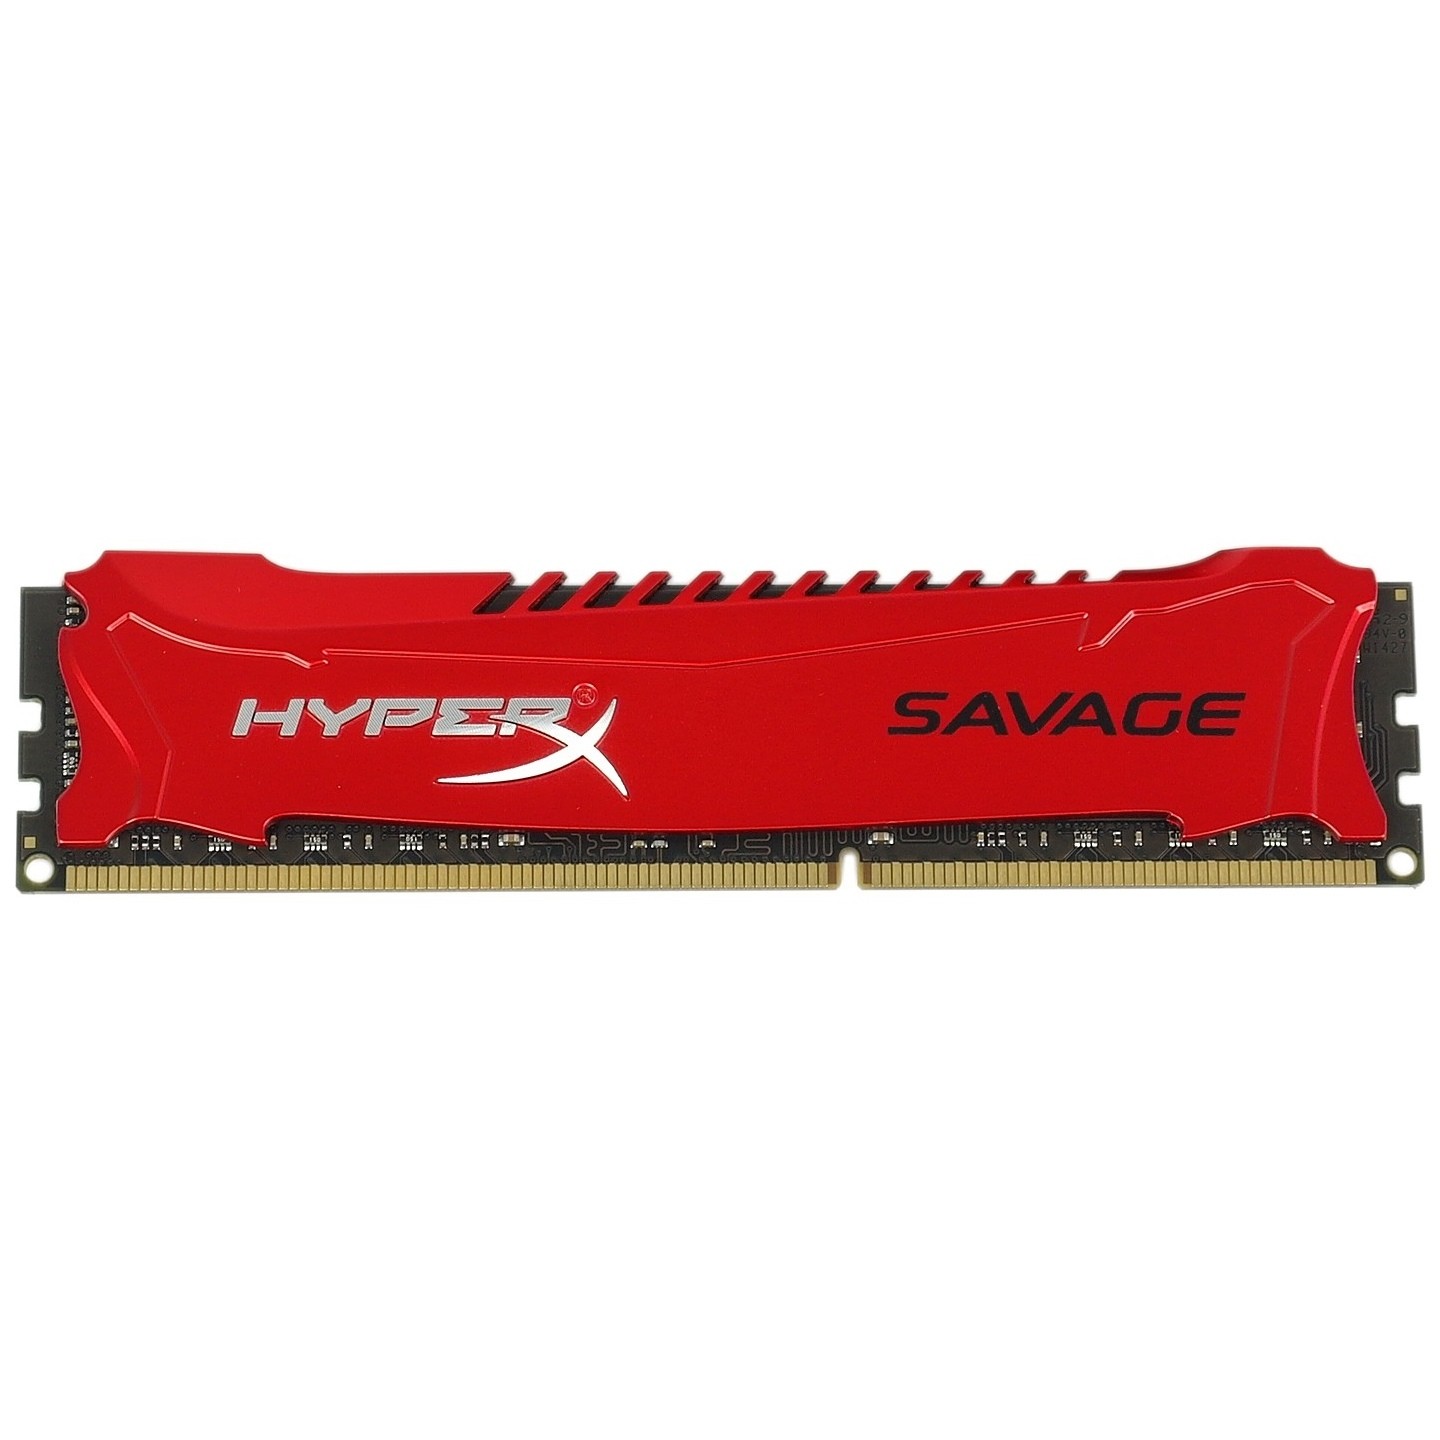 Hyper x 3. Kingston HYPERX Savage ddr4 8 GB.. Kingston HYPERX Savage ddr3 8gb. Оперативная память HYPERX Savage. HYPERX Savage ddr3 4gb.